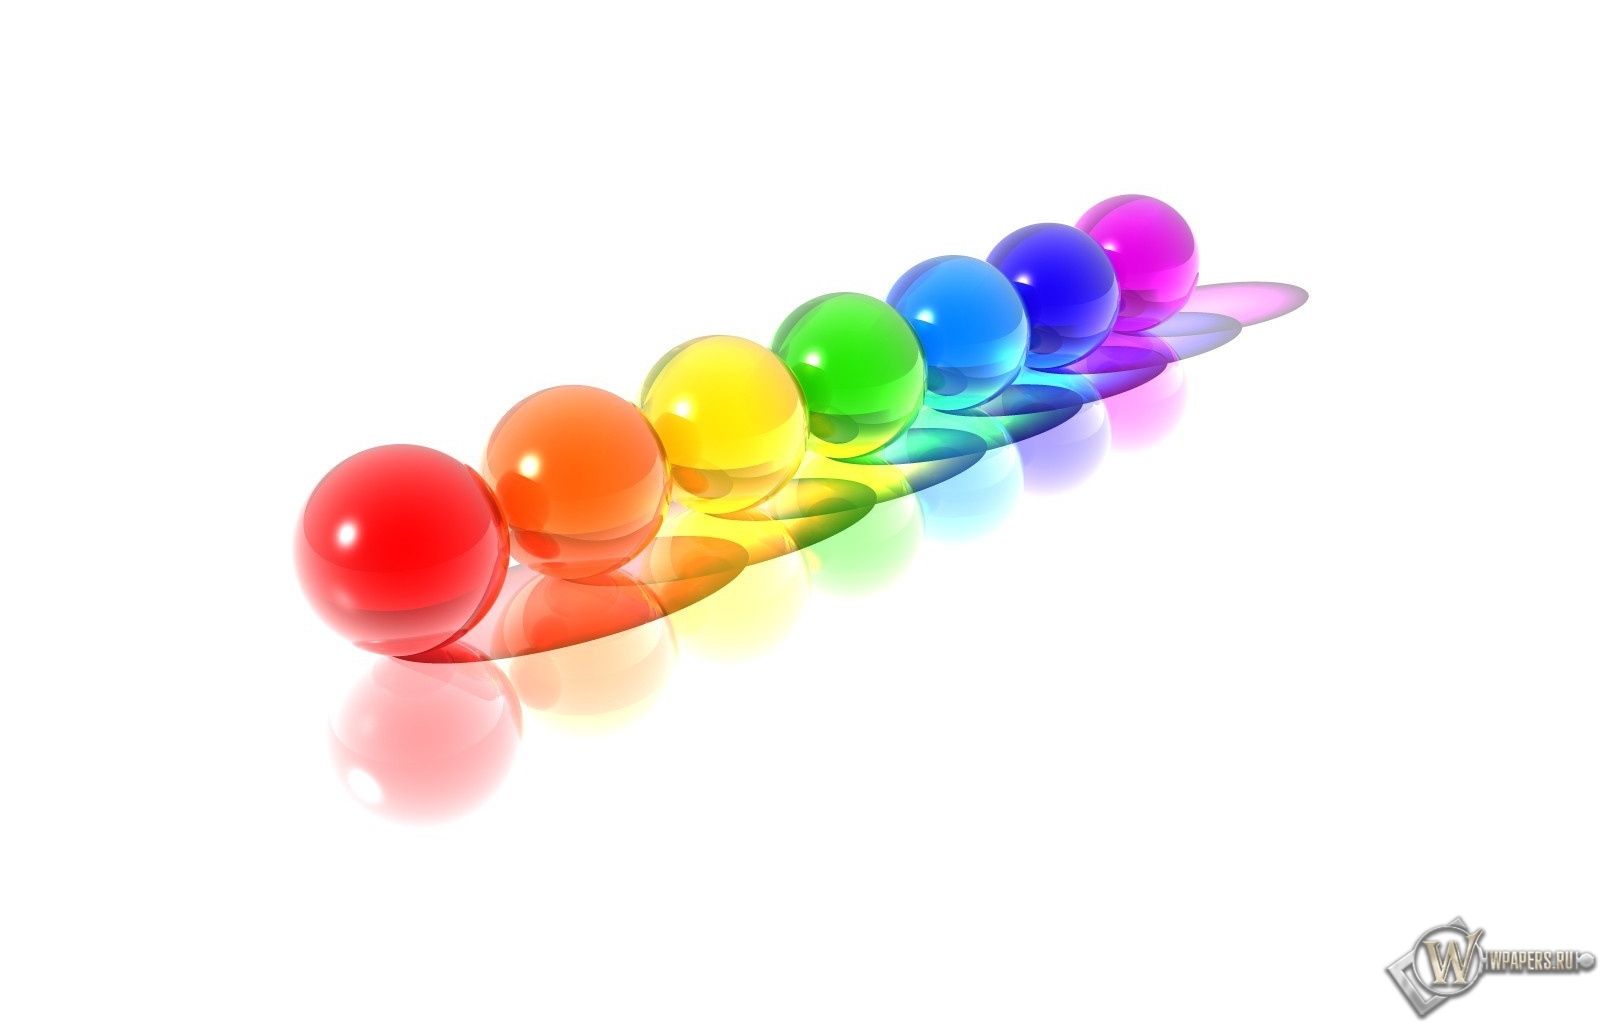 Разноцветные шарики 1600x1024